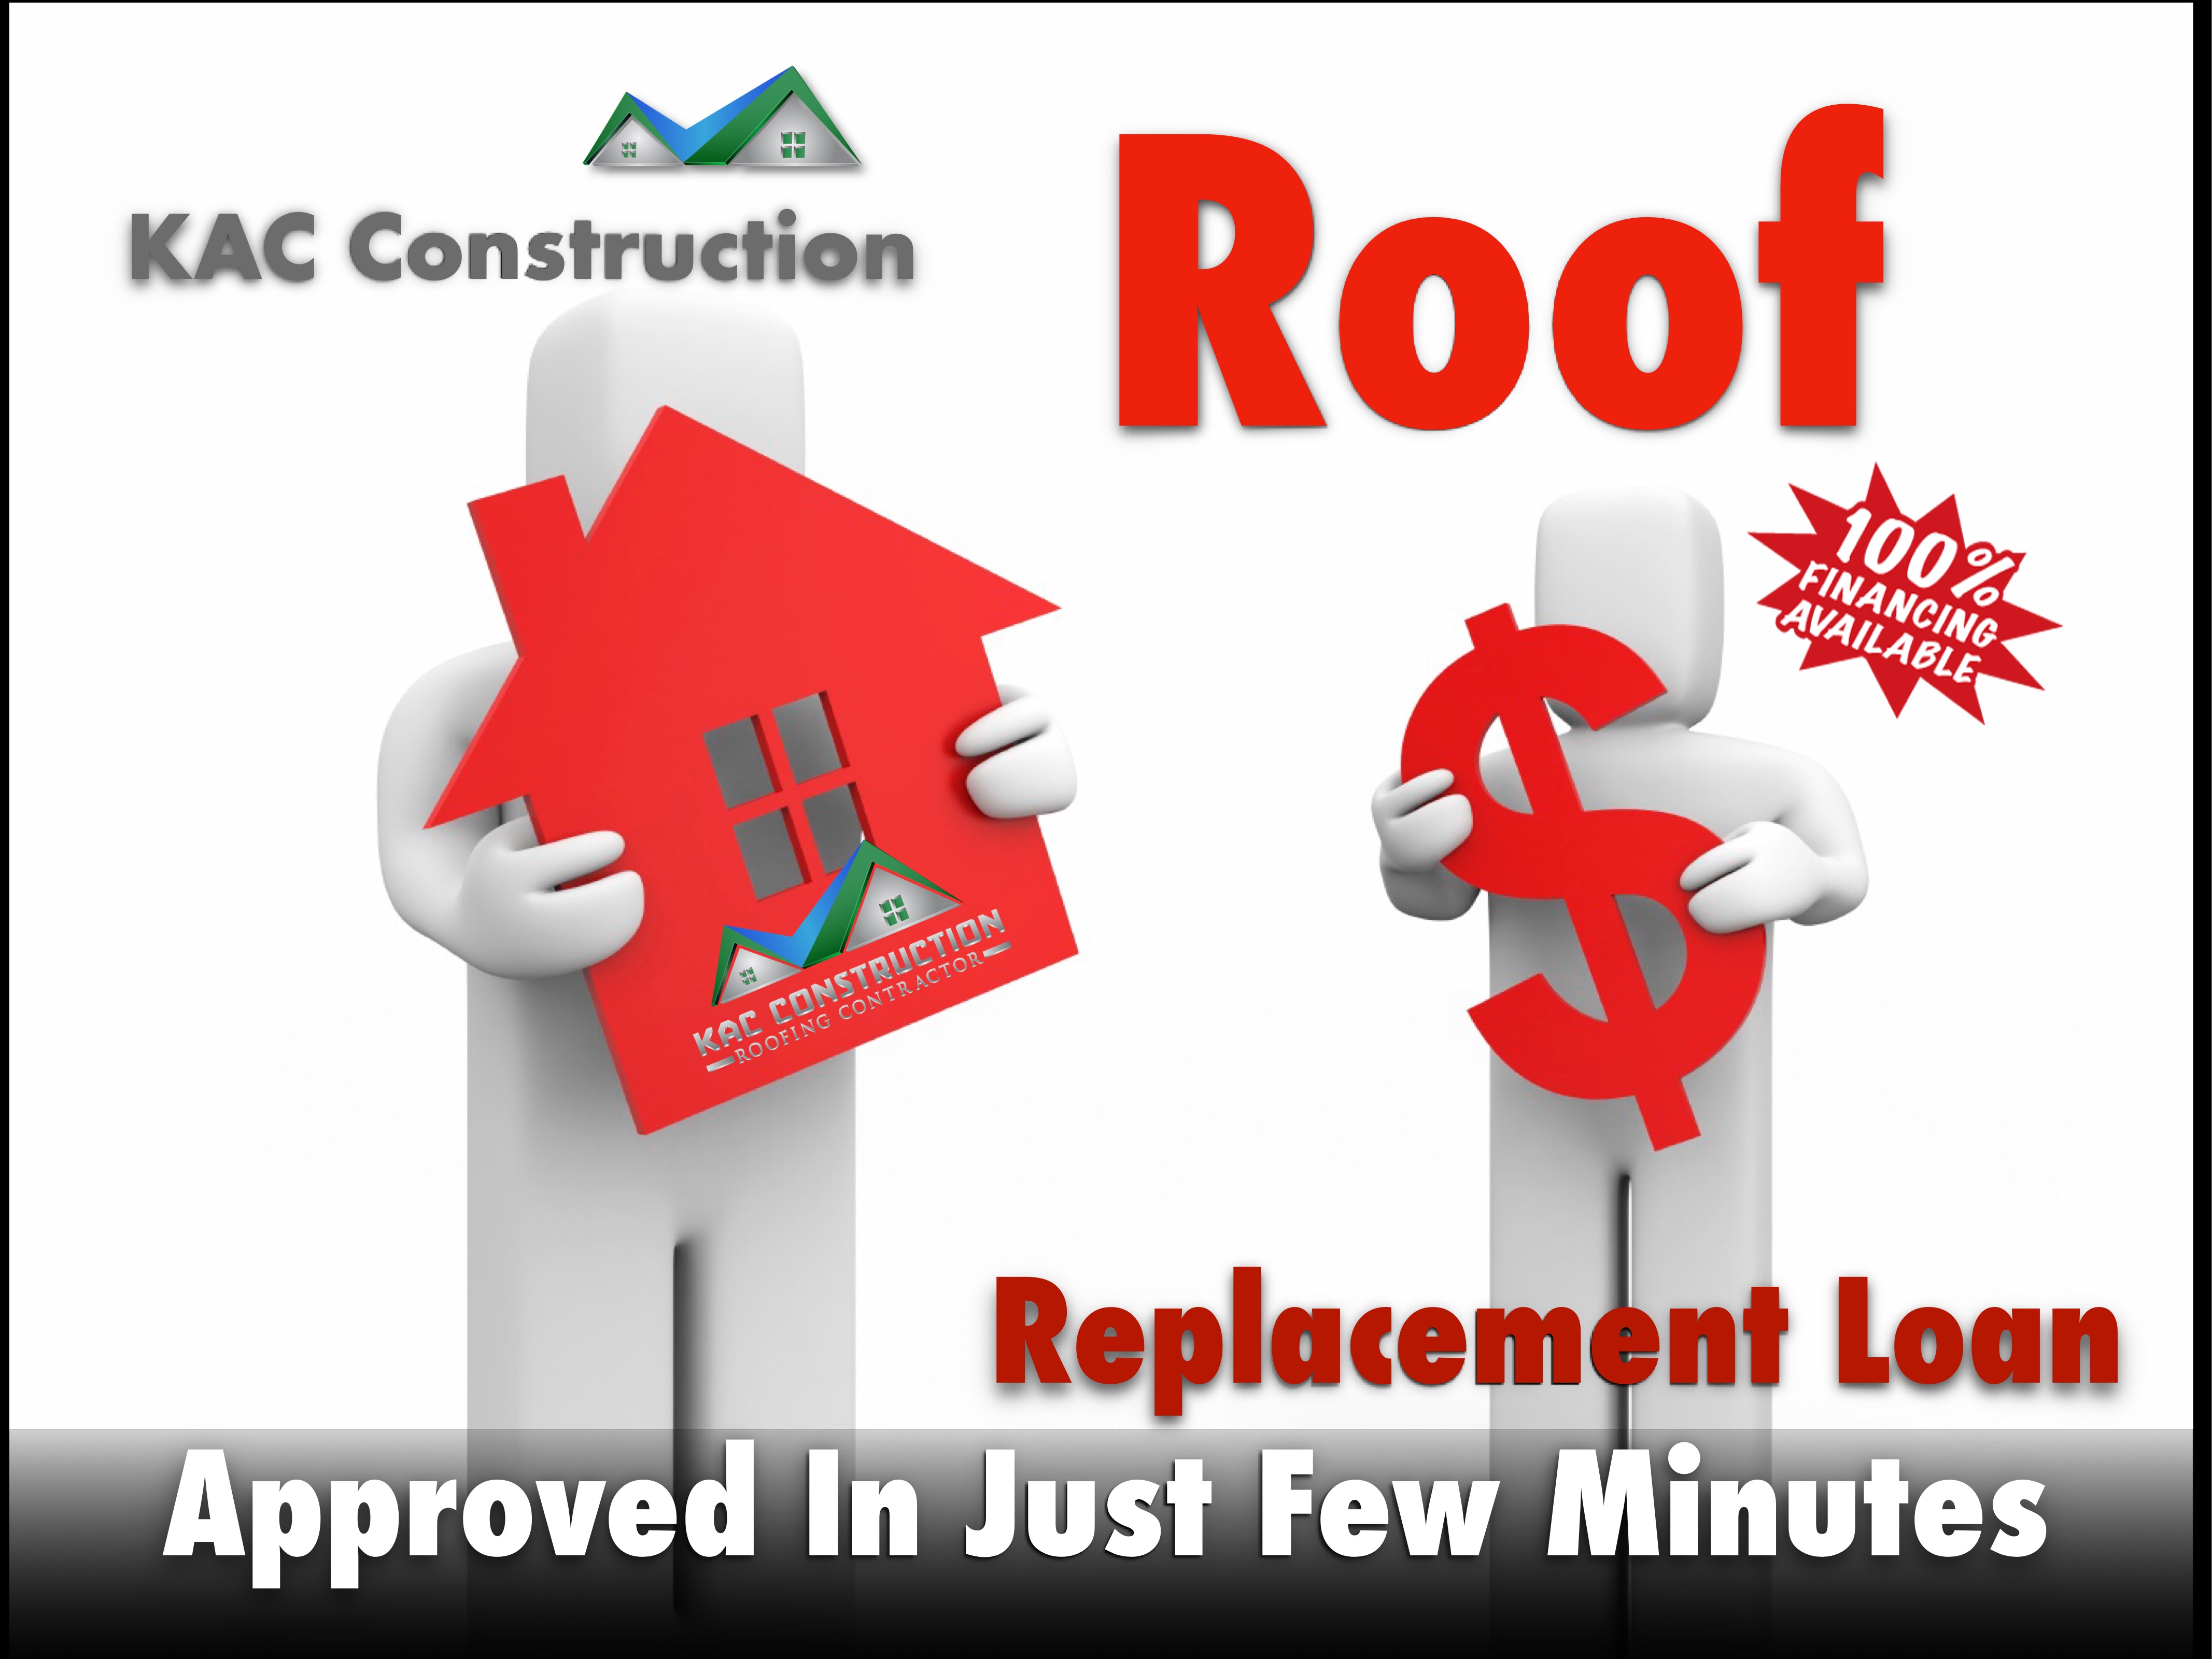 Loan ri, Loan roof repair, Loan roof replacement, loan roof financing, roof replacement loan, roof replacement loan ri, roof replacement financing ri, roofing Loan ri, roofer Loan ri, roof Loan ri,